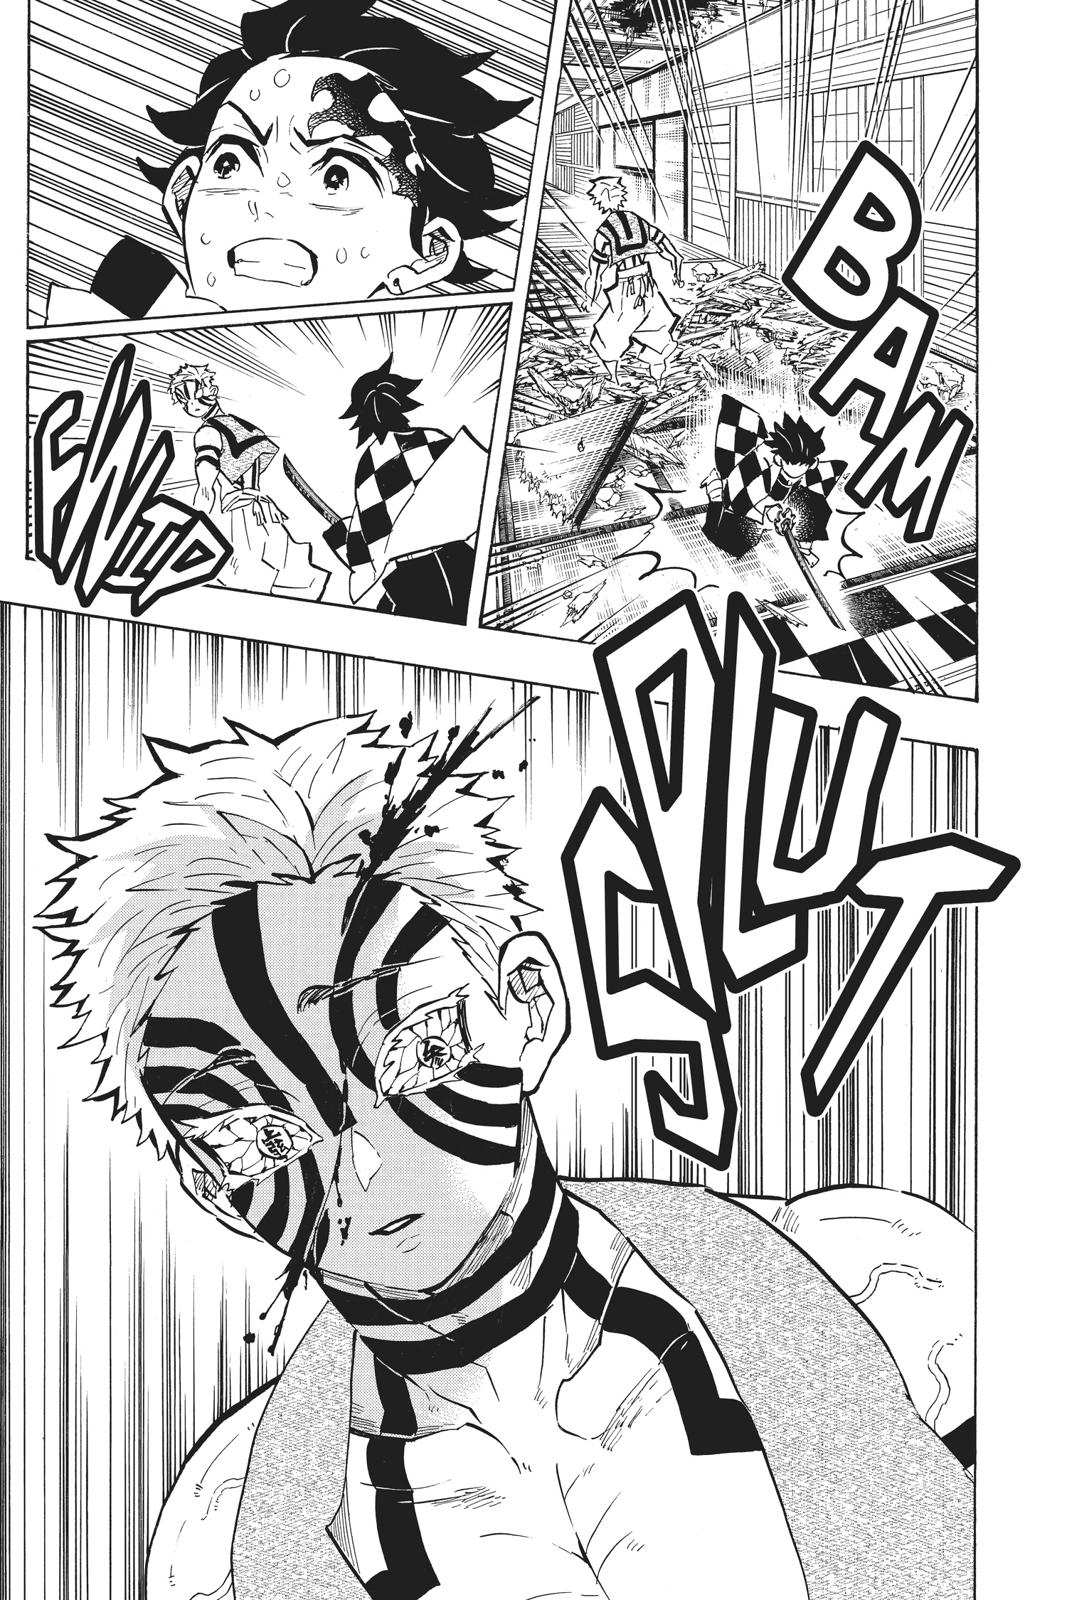 Demon Slayer Manga Manga Chapter - 147 - image 6